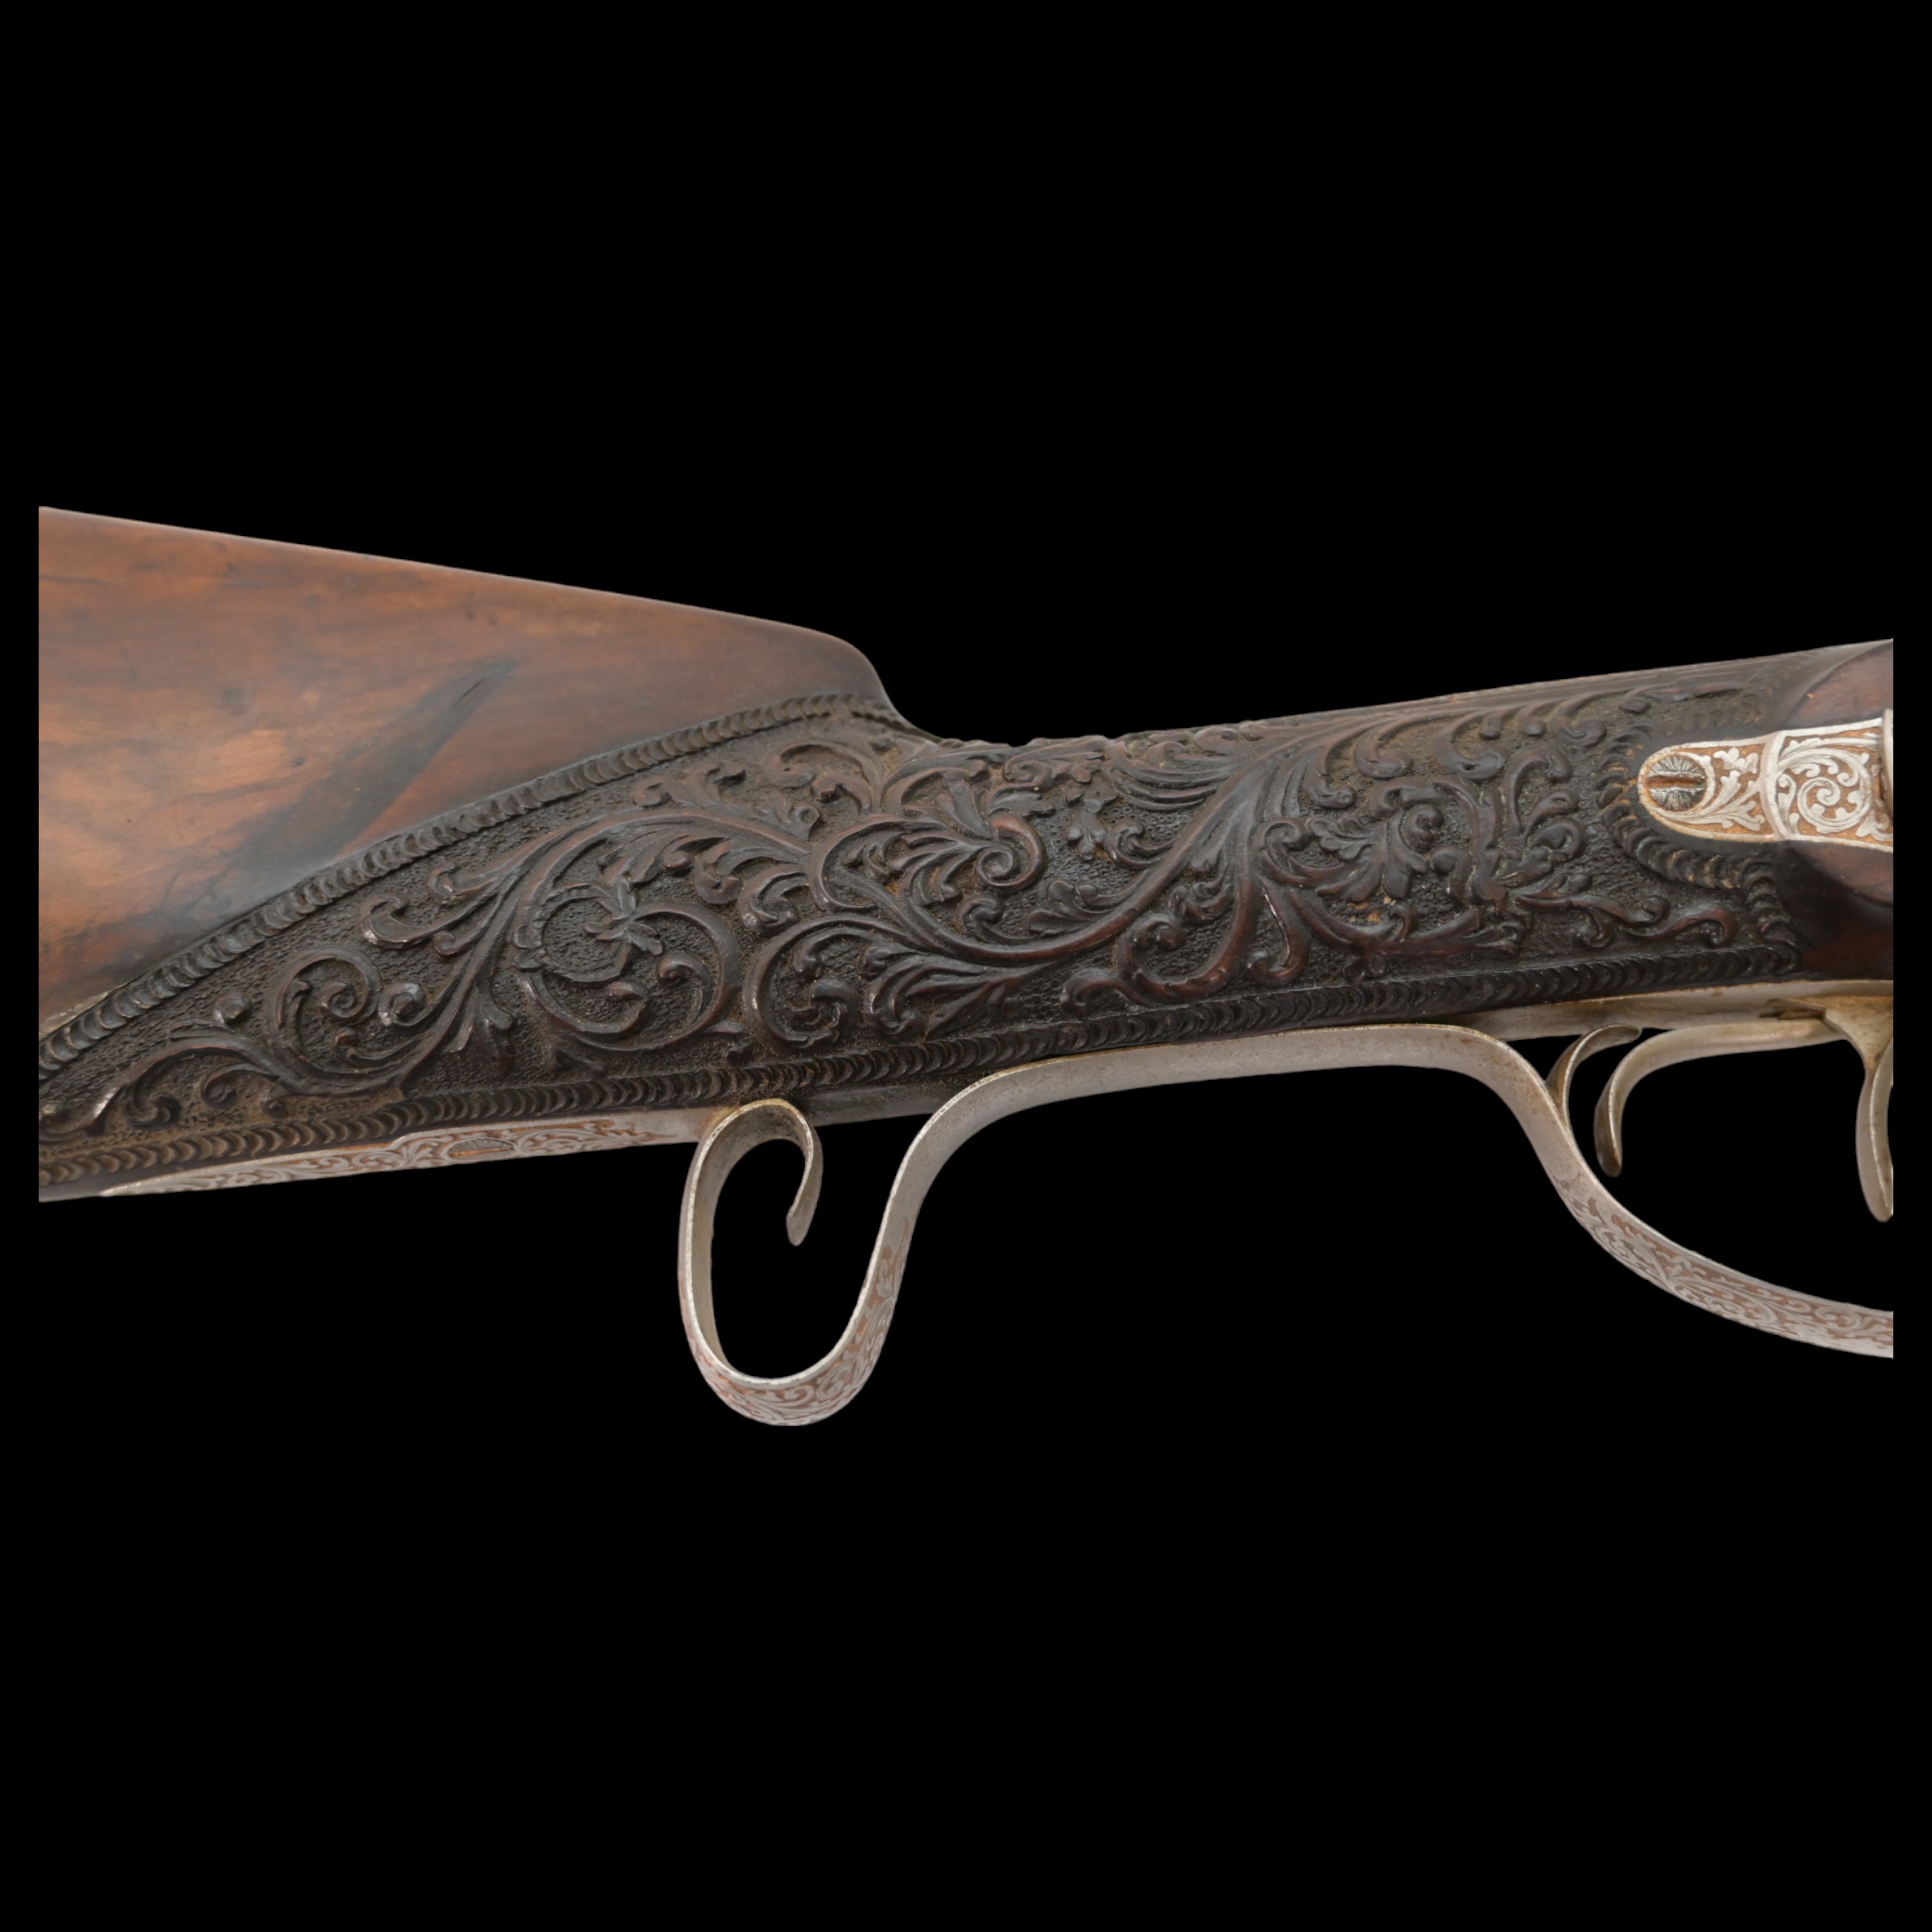 Rare Double-barrel percussion shotgun, Eusebio Zuloaga, royal gunsmith, Spain, mid-19th century. - Image 12 of 26